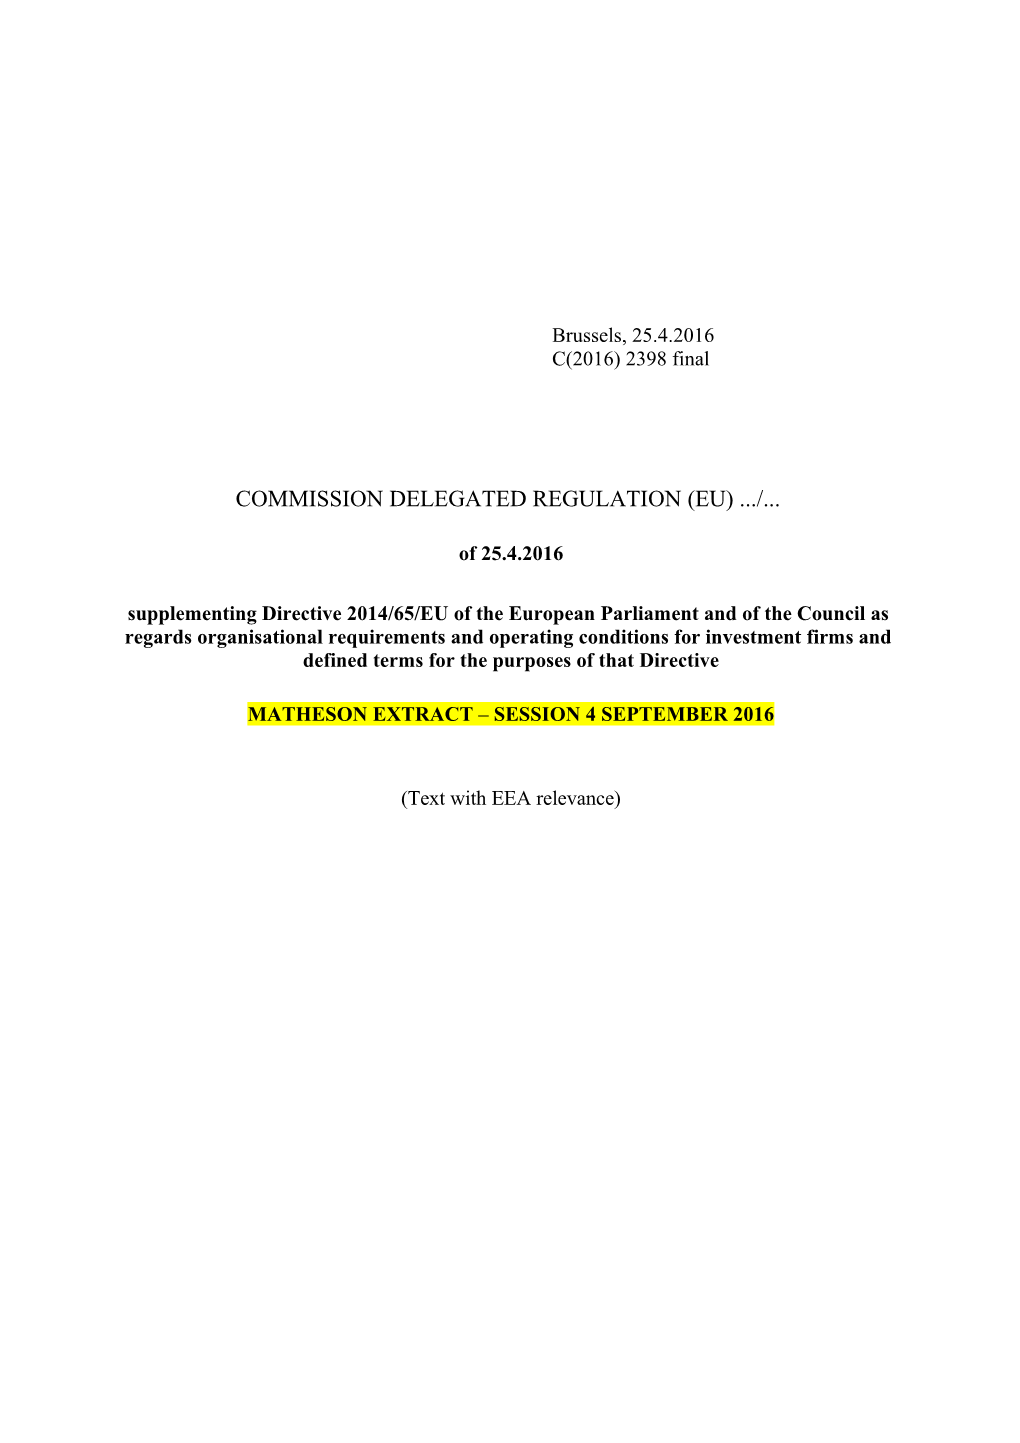 COMMISSION DELEGATED REGULATION (EU) / of 25.4.2016